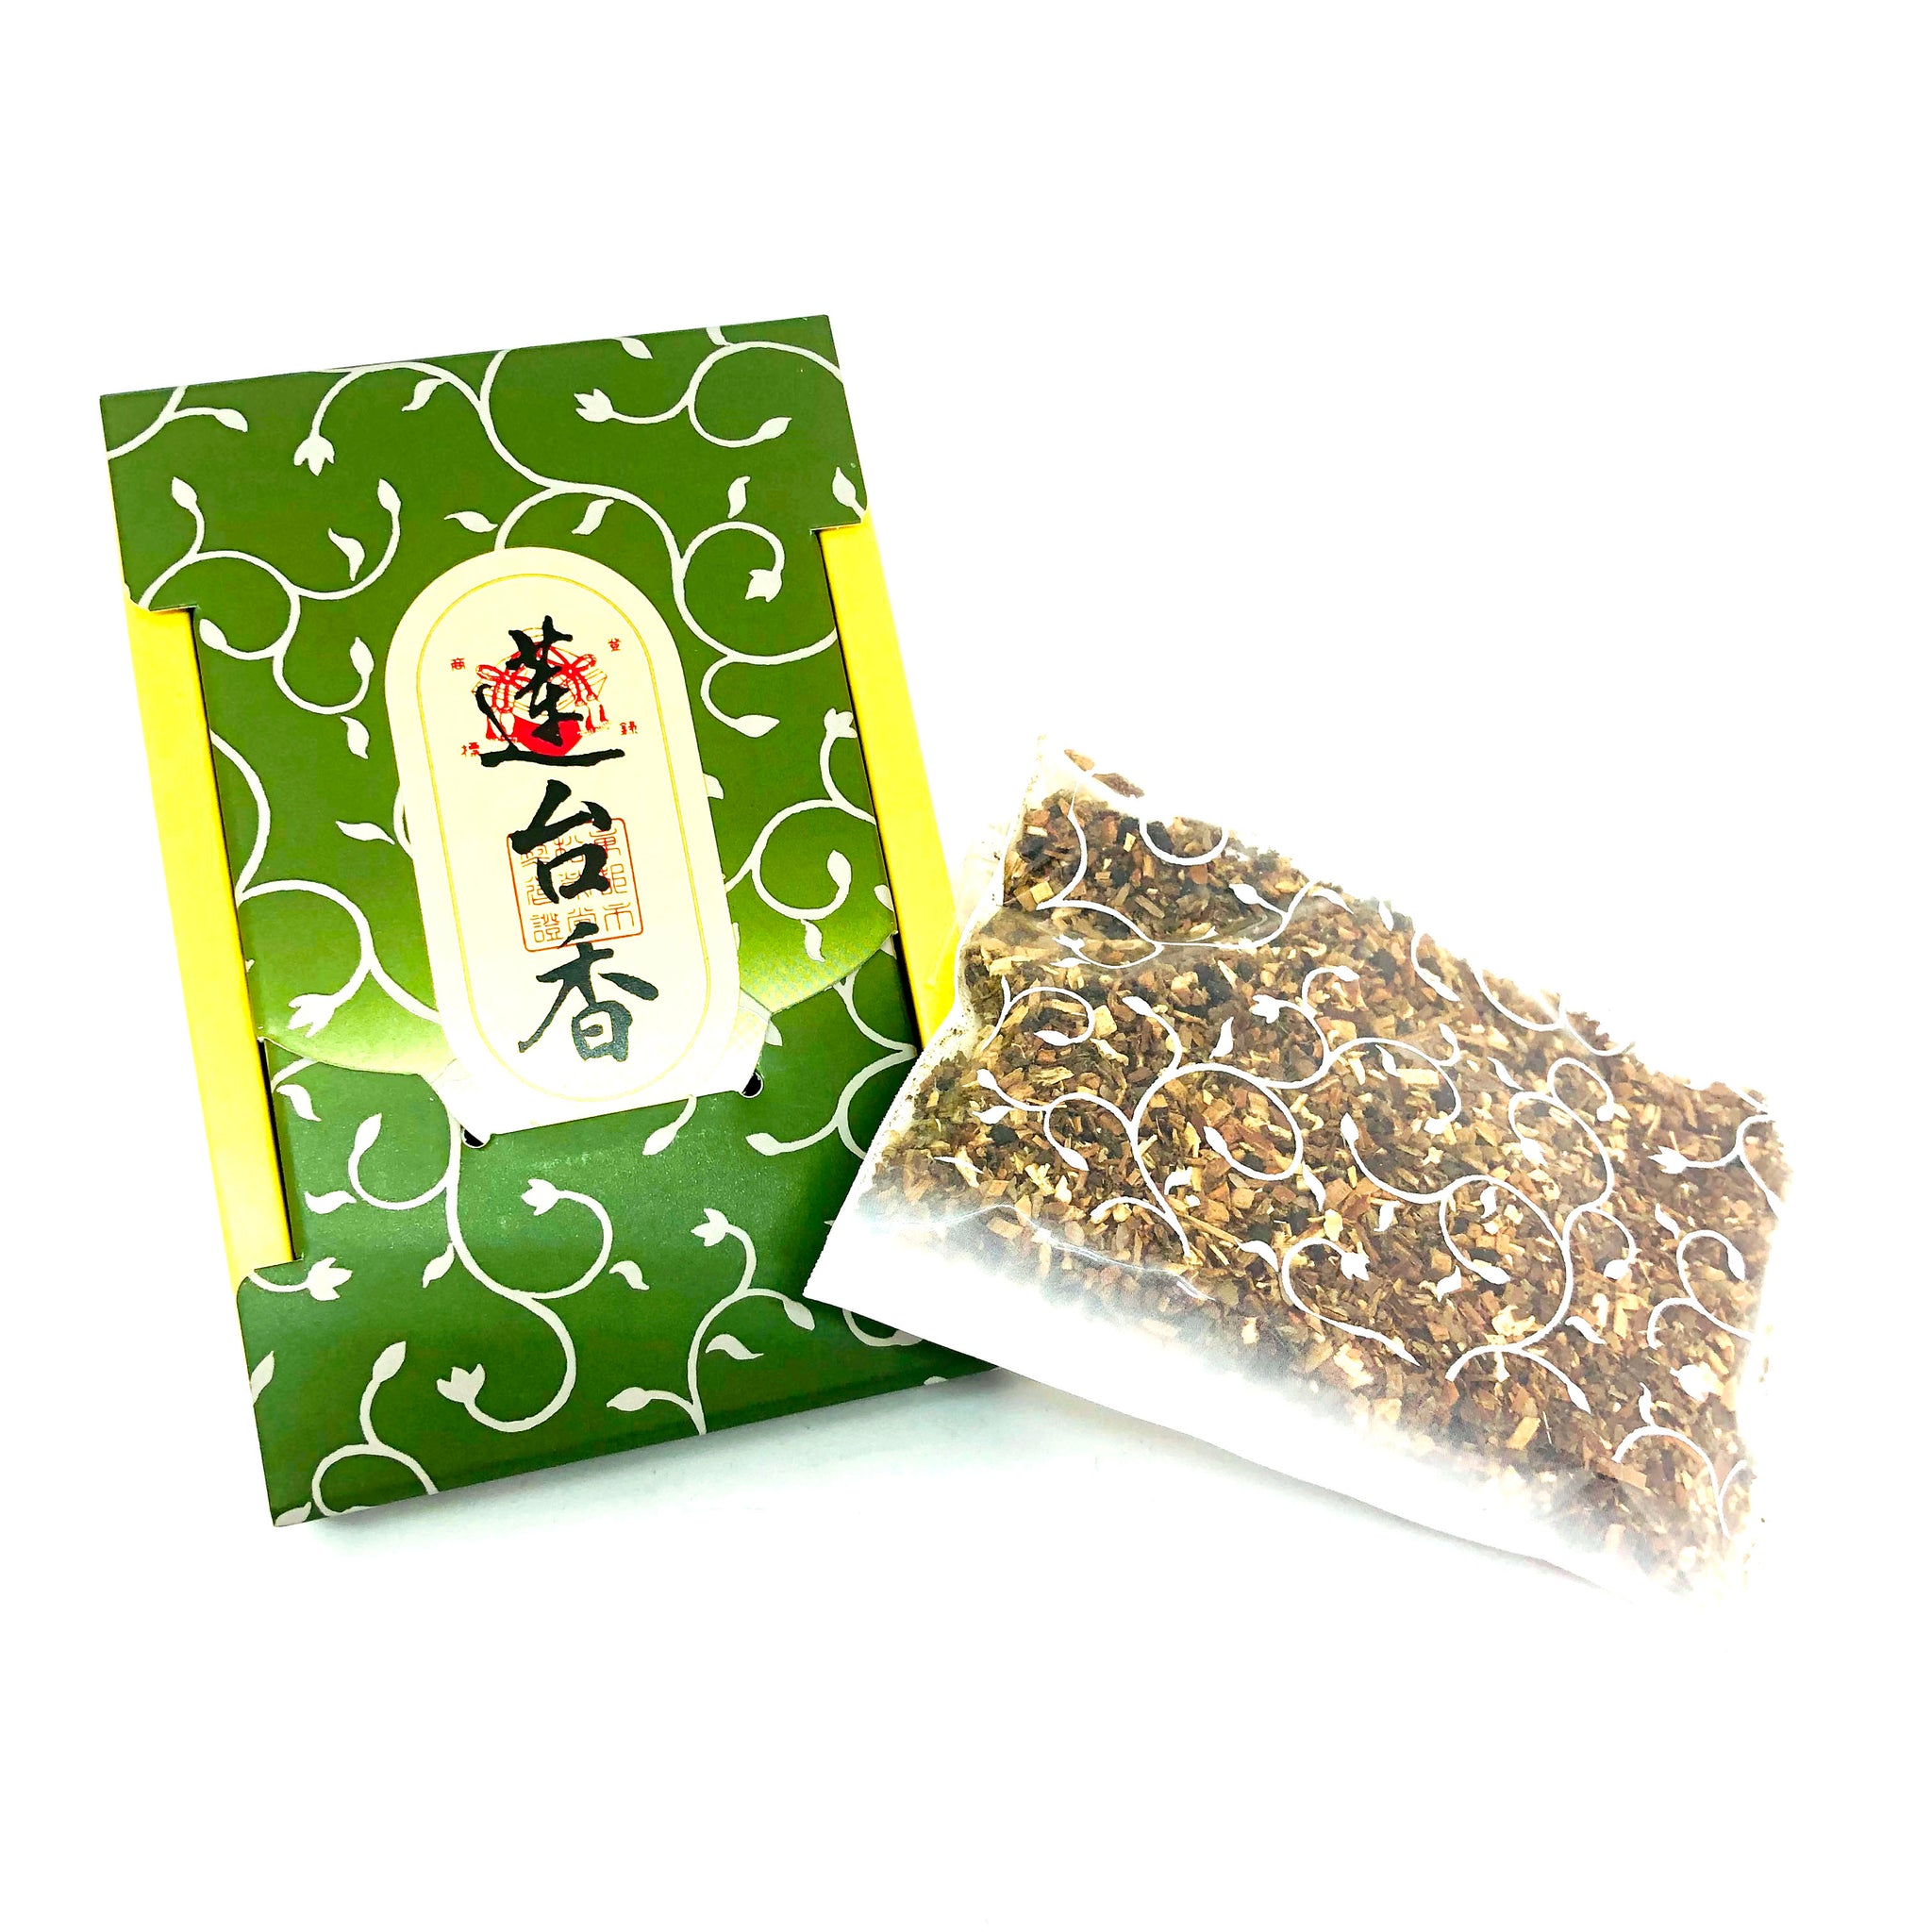 Aromatic Woods Incense - Lotus Leaf Granulated Incense - Rendai-koh